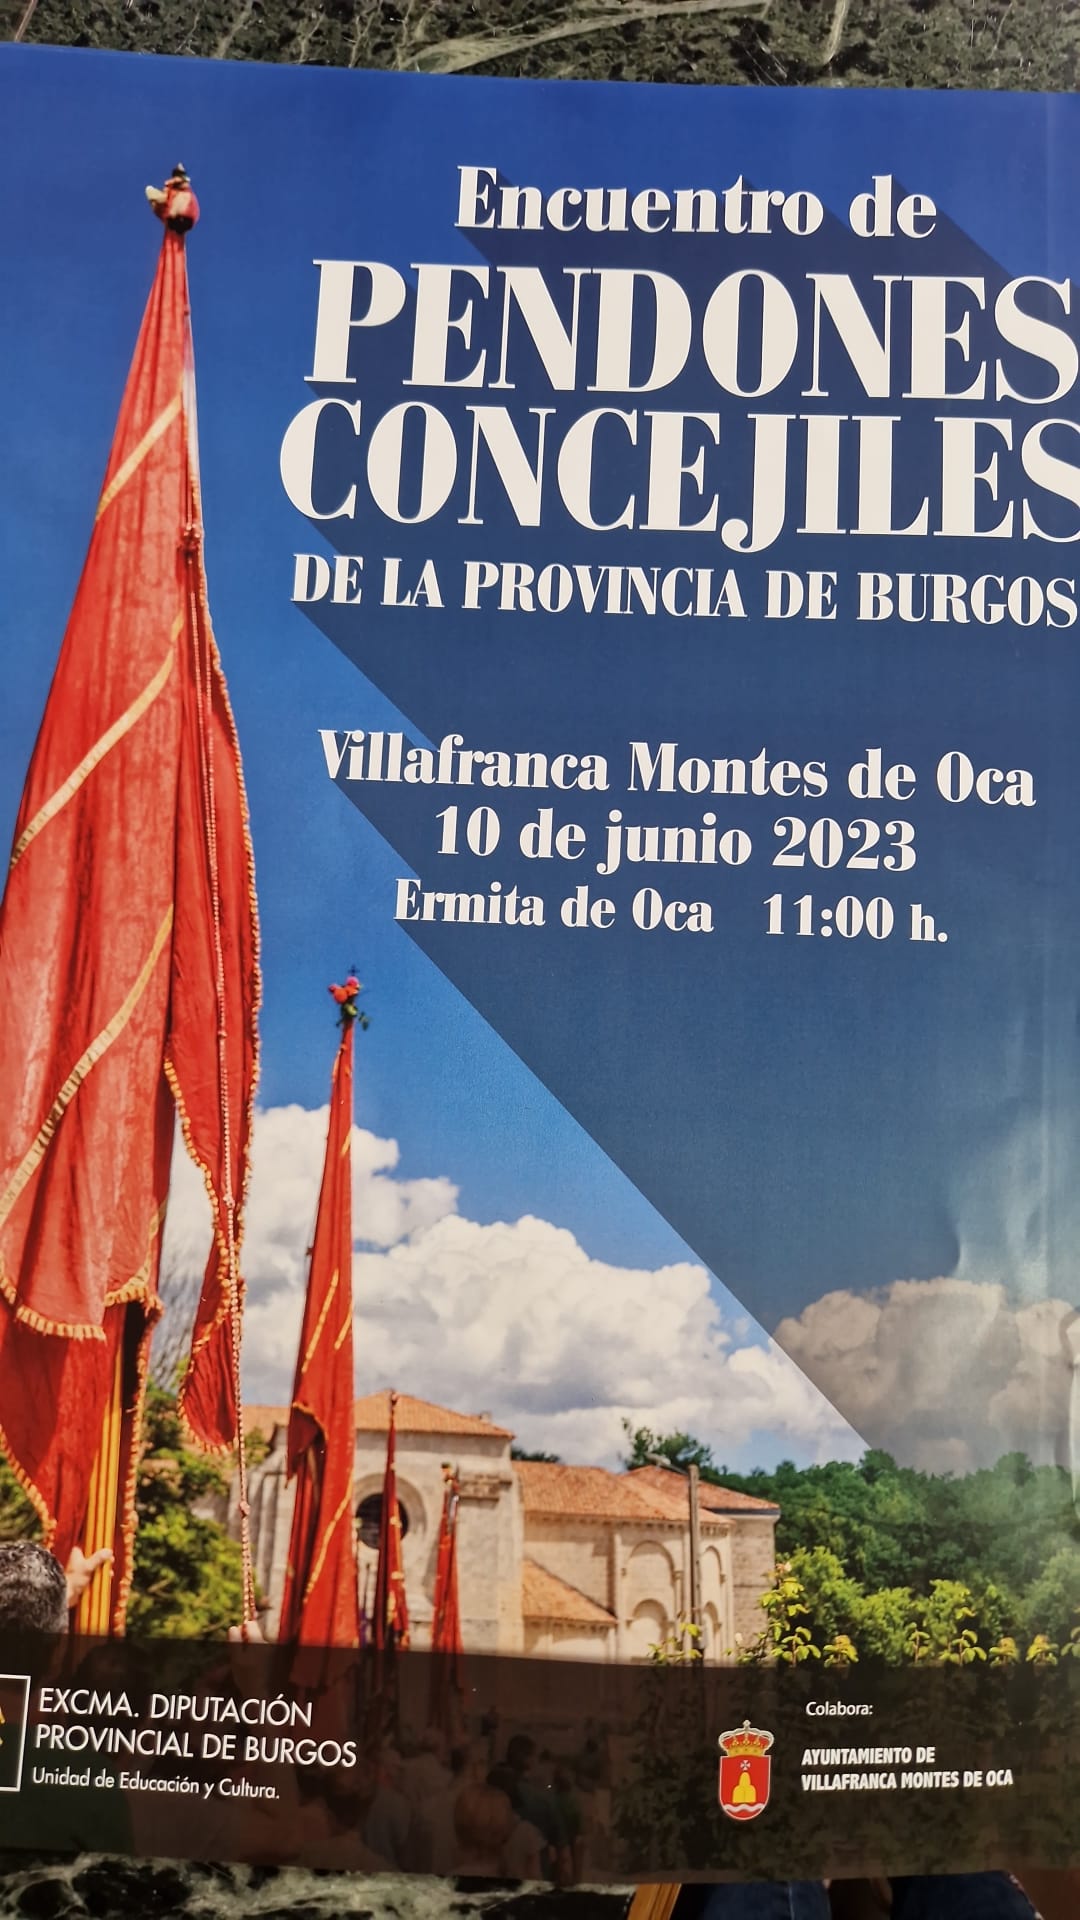 Encuentro de Pendones Concejiles en Villafranca Montes de Oca. Junio 2023